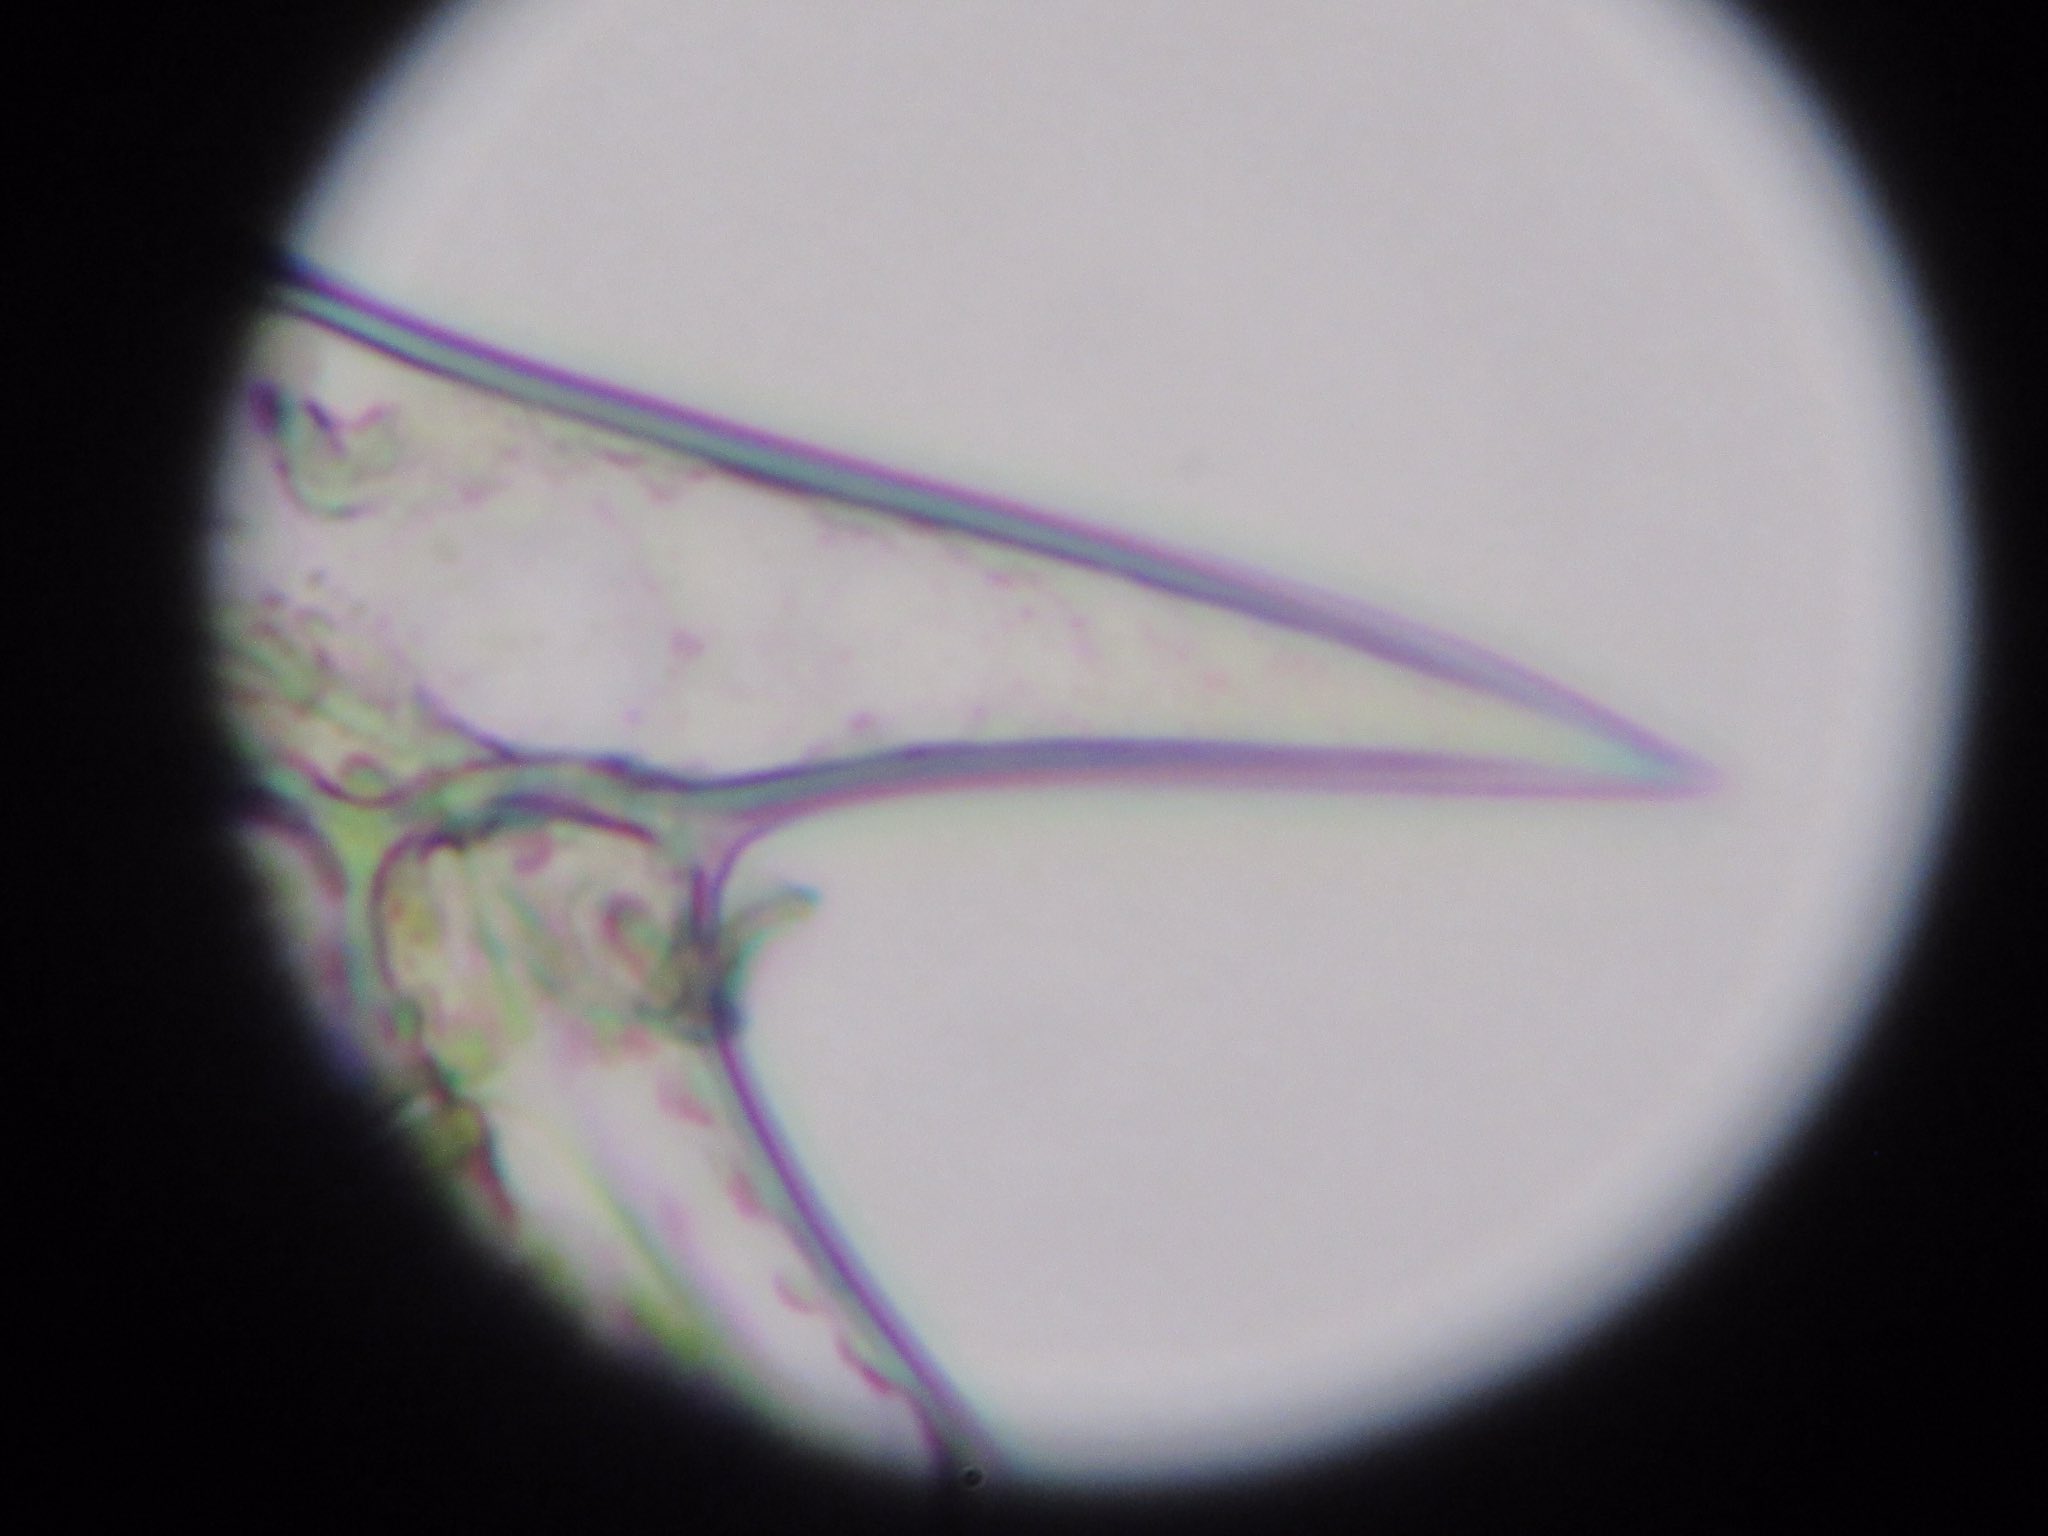 東京バイオテクノロジー専門学校 公式 在 Twitter 上 1年生の実習で観察した細胞の紹介です 写真のこれは何でしょう オオカナダモ の葉の棘細胞です 同じ葉の中にも形の異なる細胞があるんです 1年生は 微生物や動物細胞を観察する実習もあって 違いの